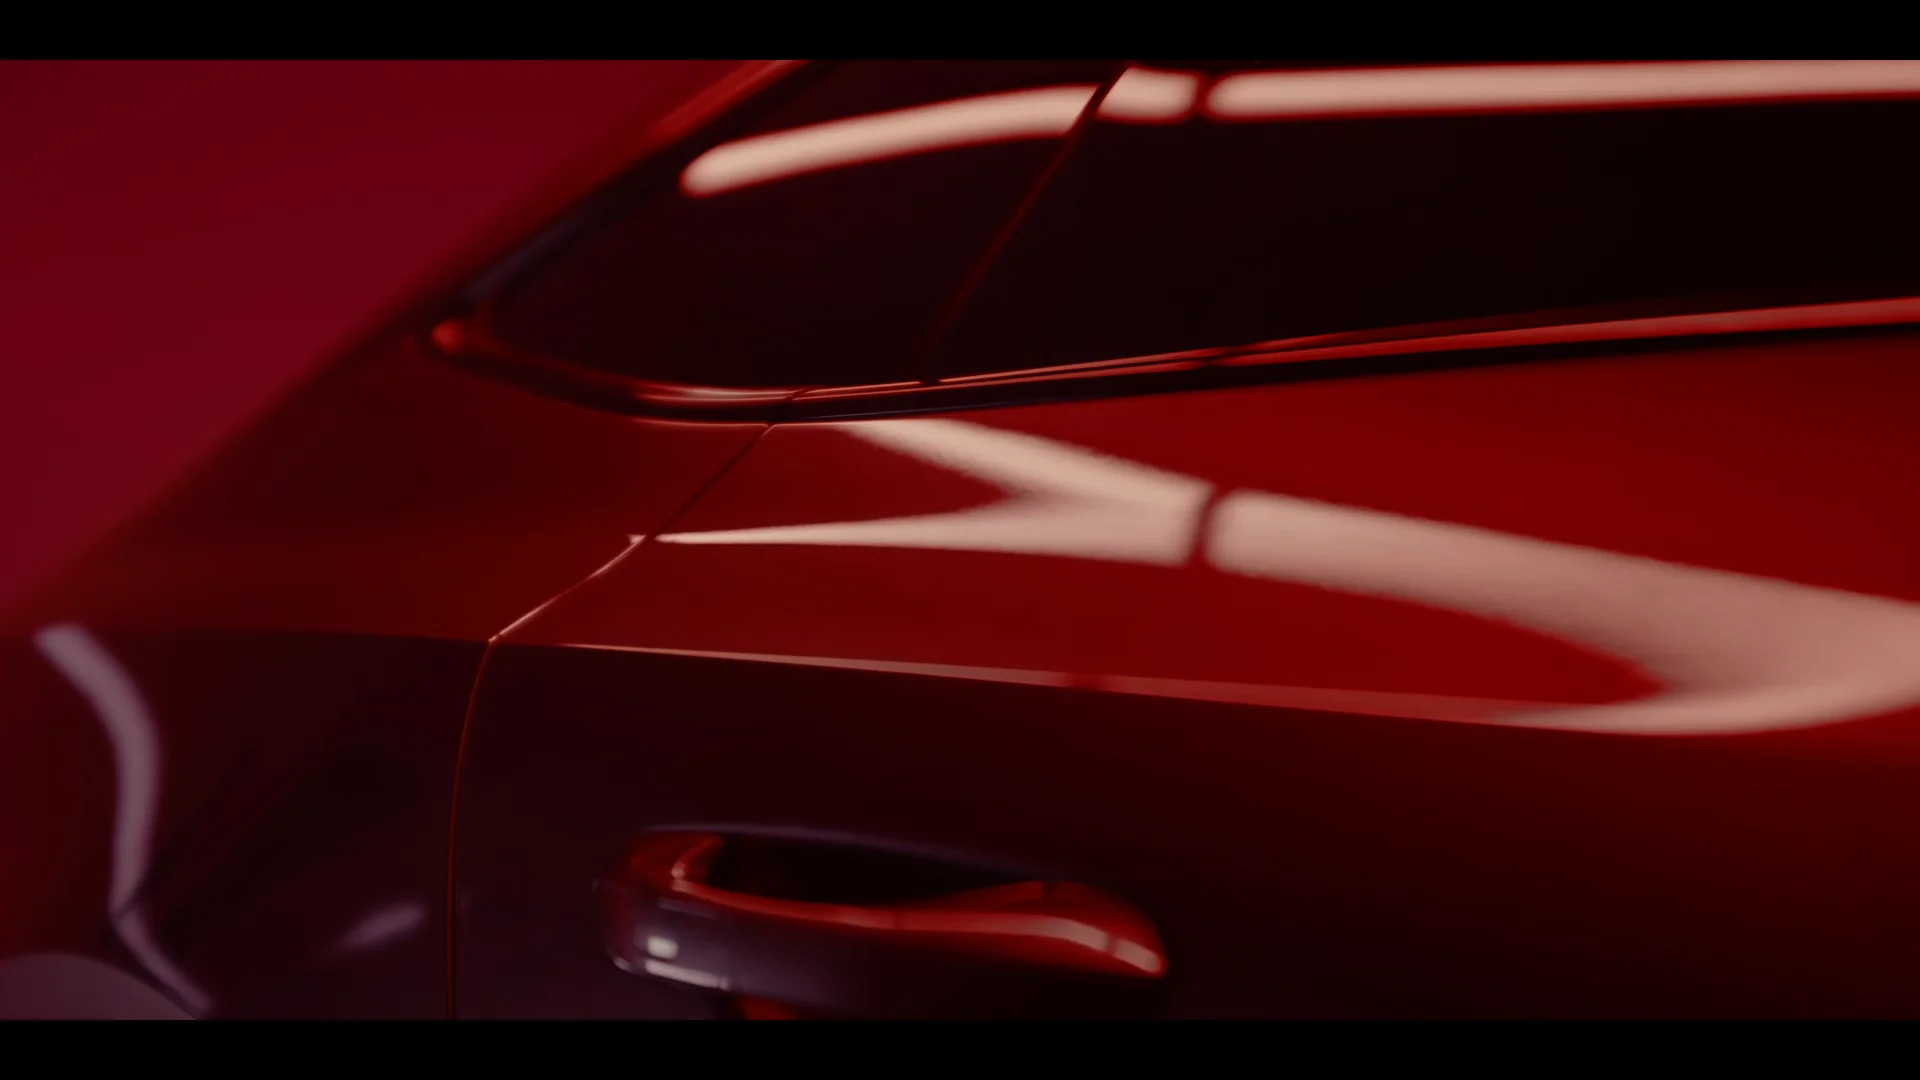 AUDI AOZ - Audi Original Zubehör - für die Familie on Vimeo